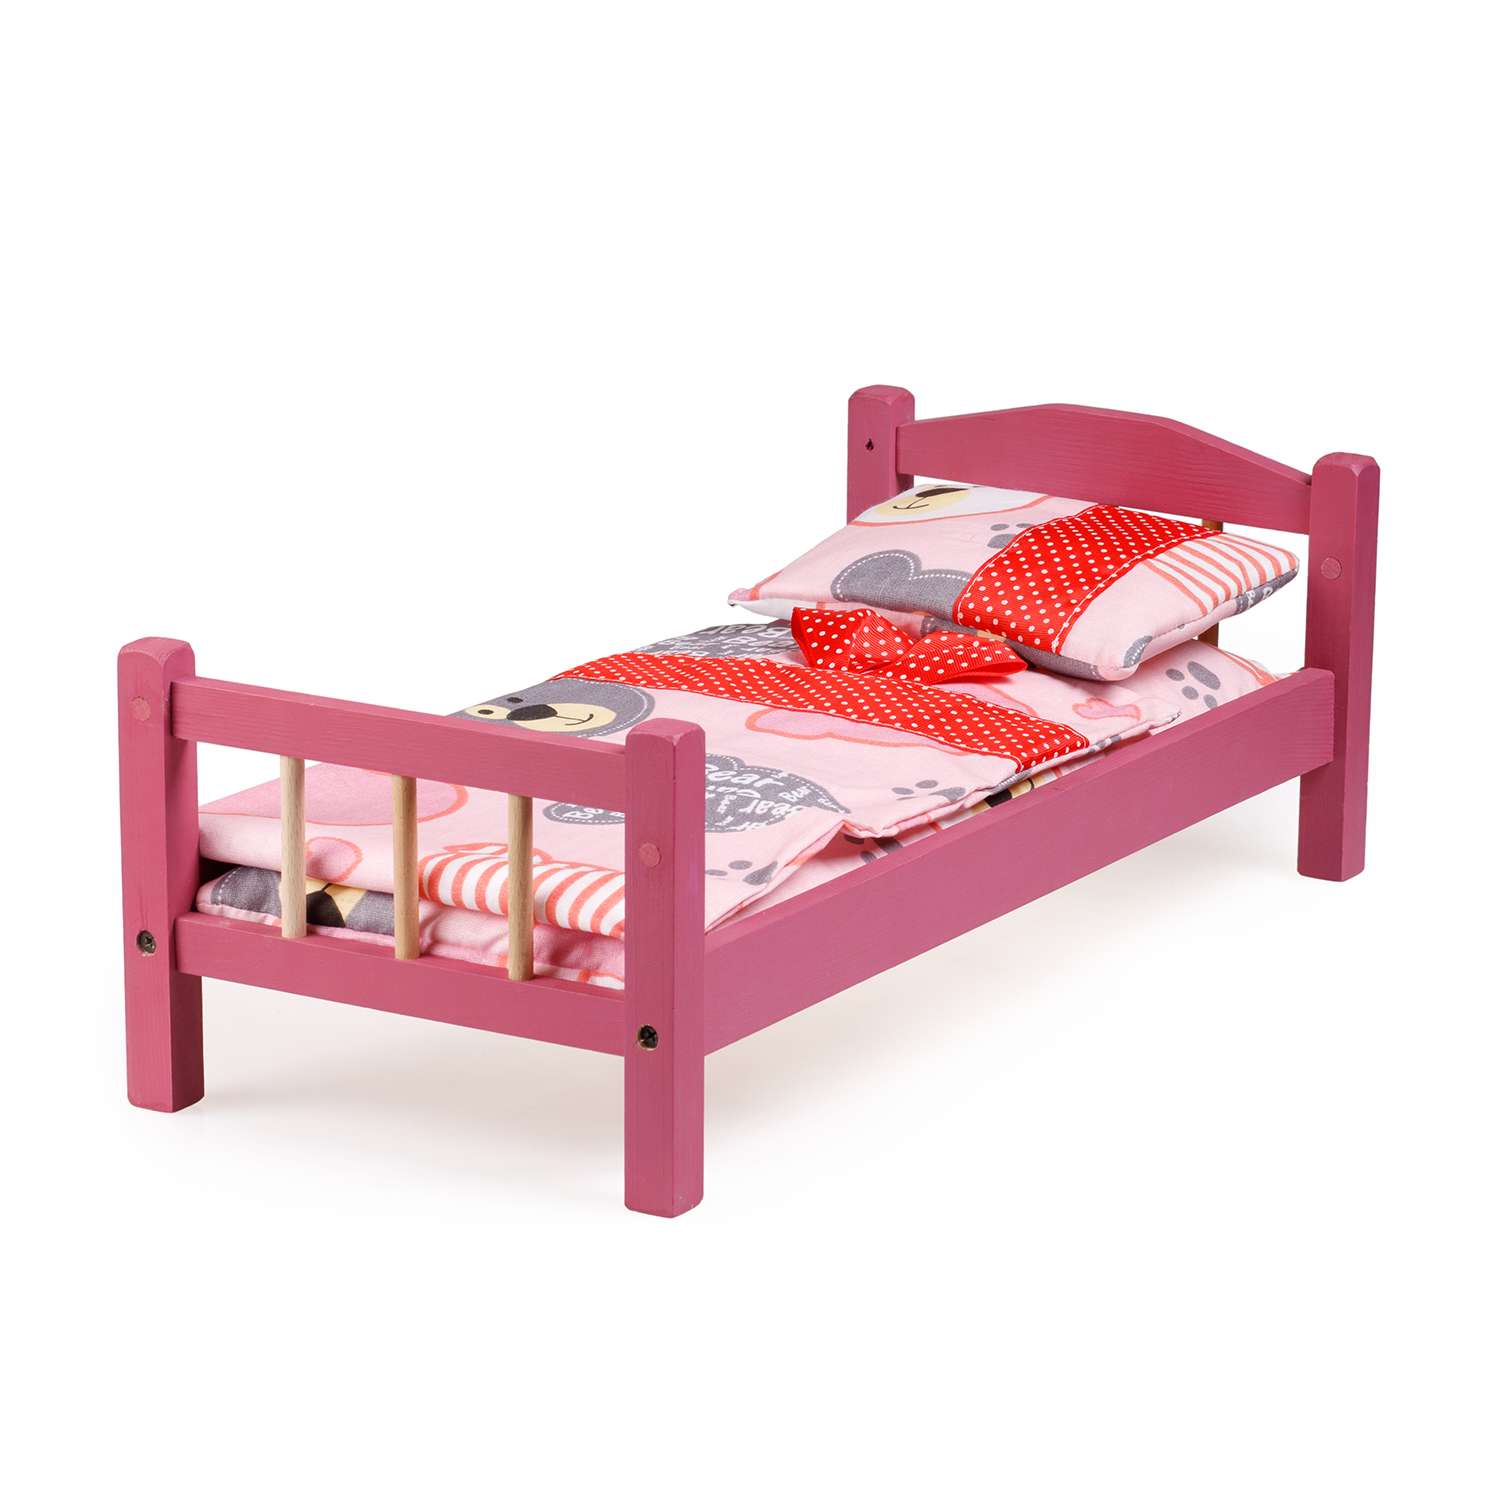 Кроватка для кукол Тутси с двумя спинками розовая деревянная 1-294-2021 - фото 1